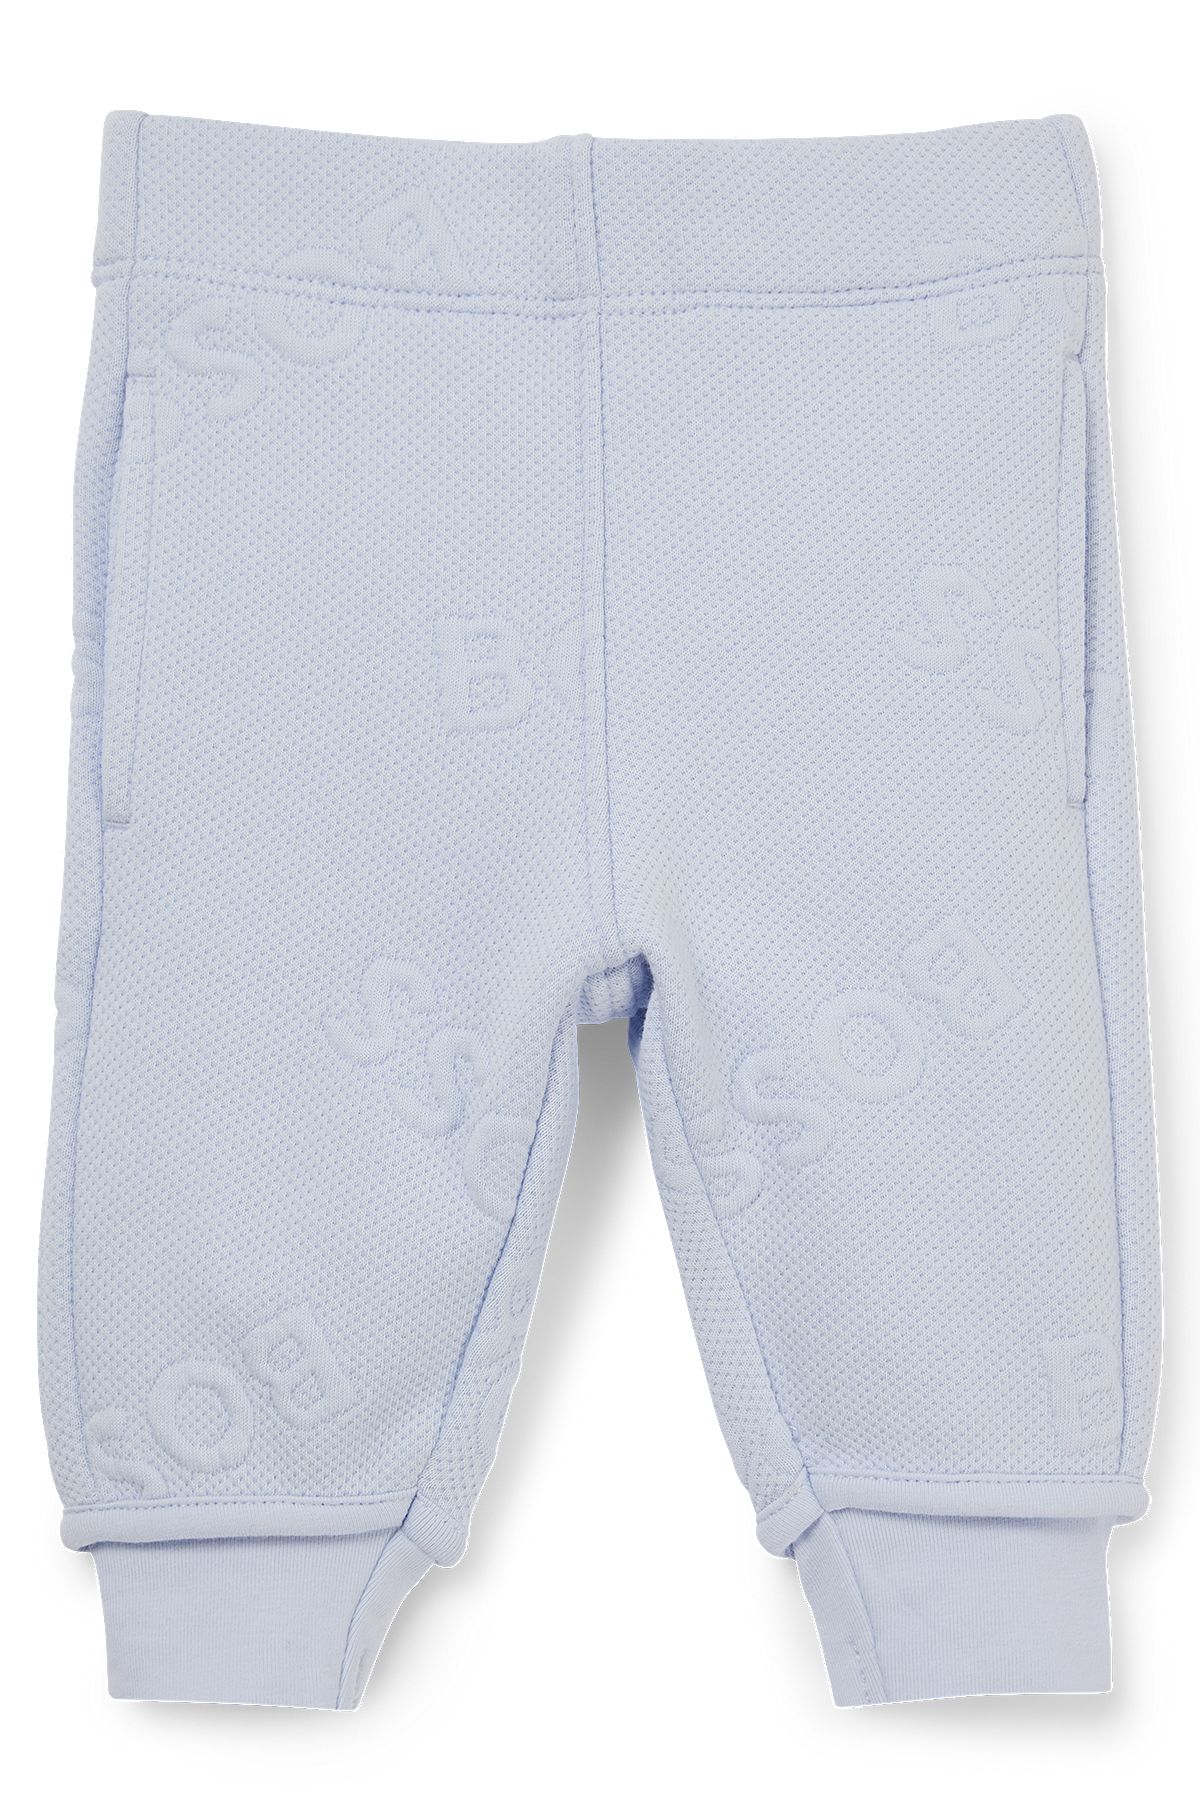 Pantalones de chándal en mezcla de algodón para bebé con detalle de logo, Celeste